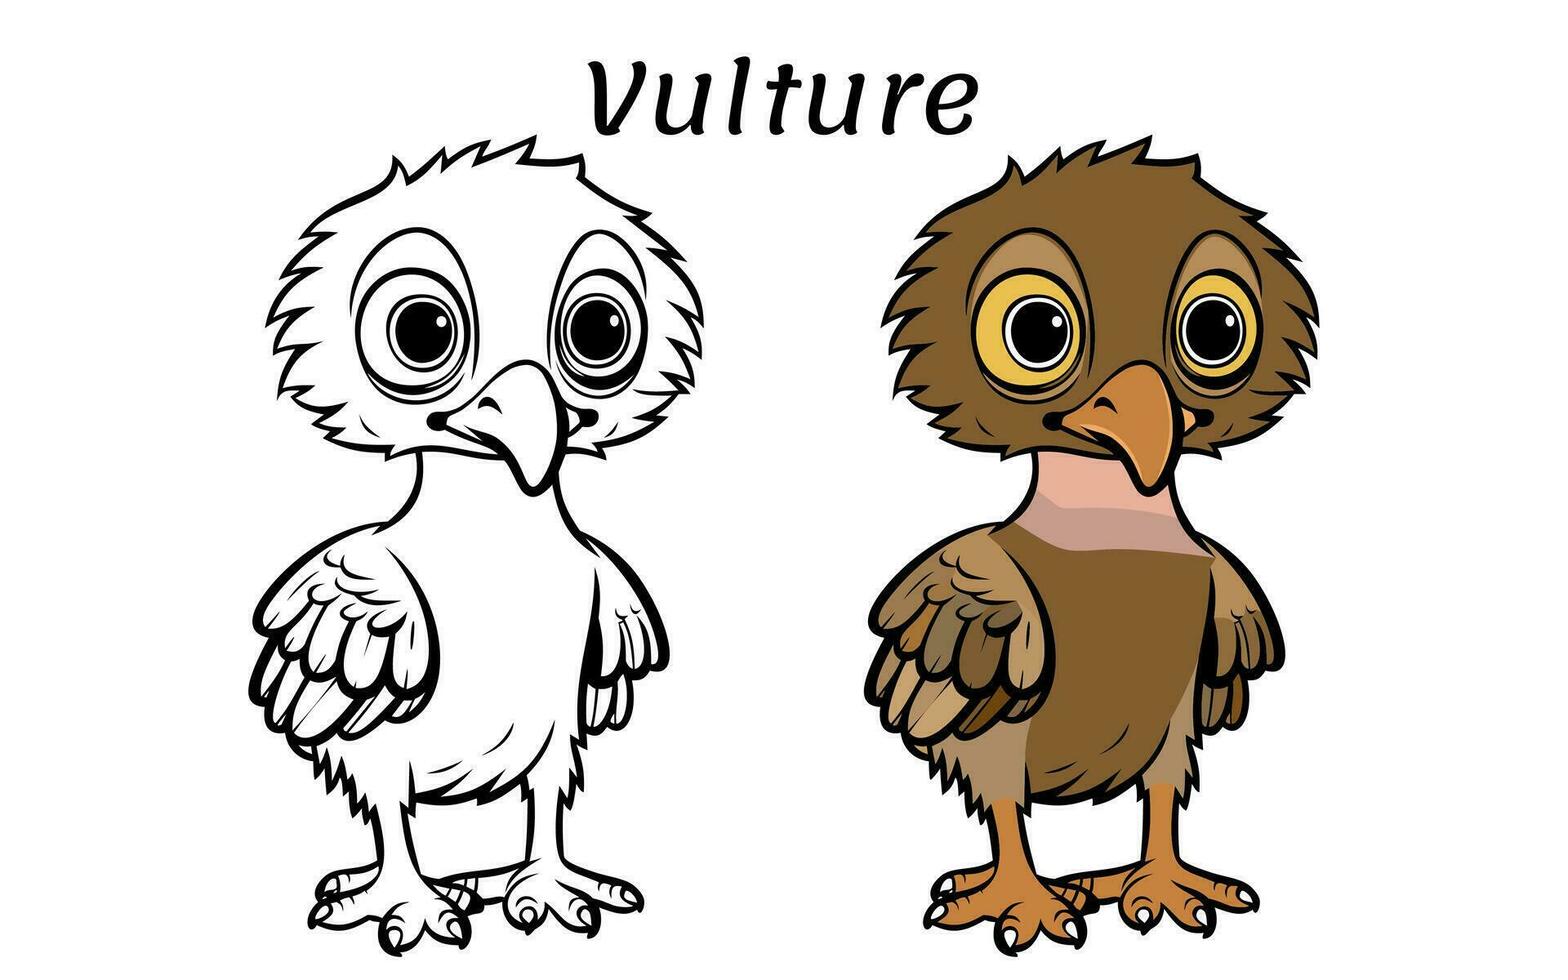 mignonne vautour animal coloration livre illustration vecteur